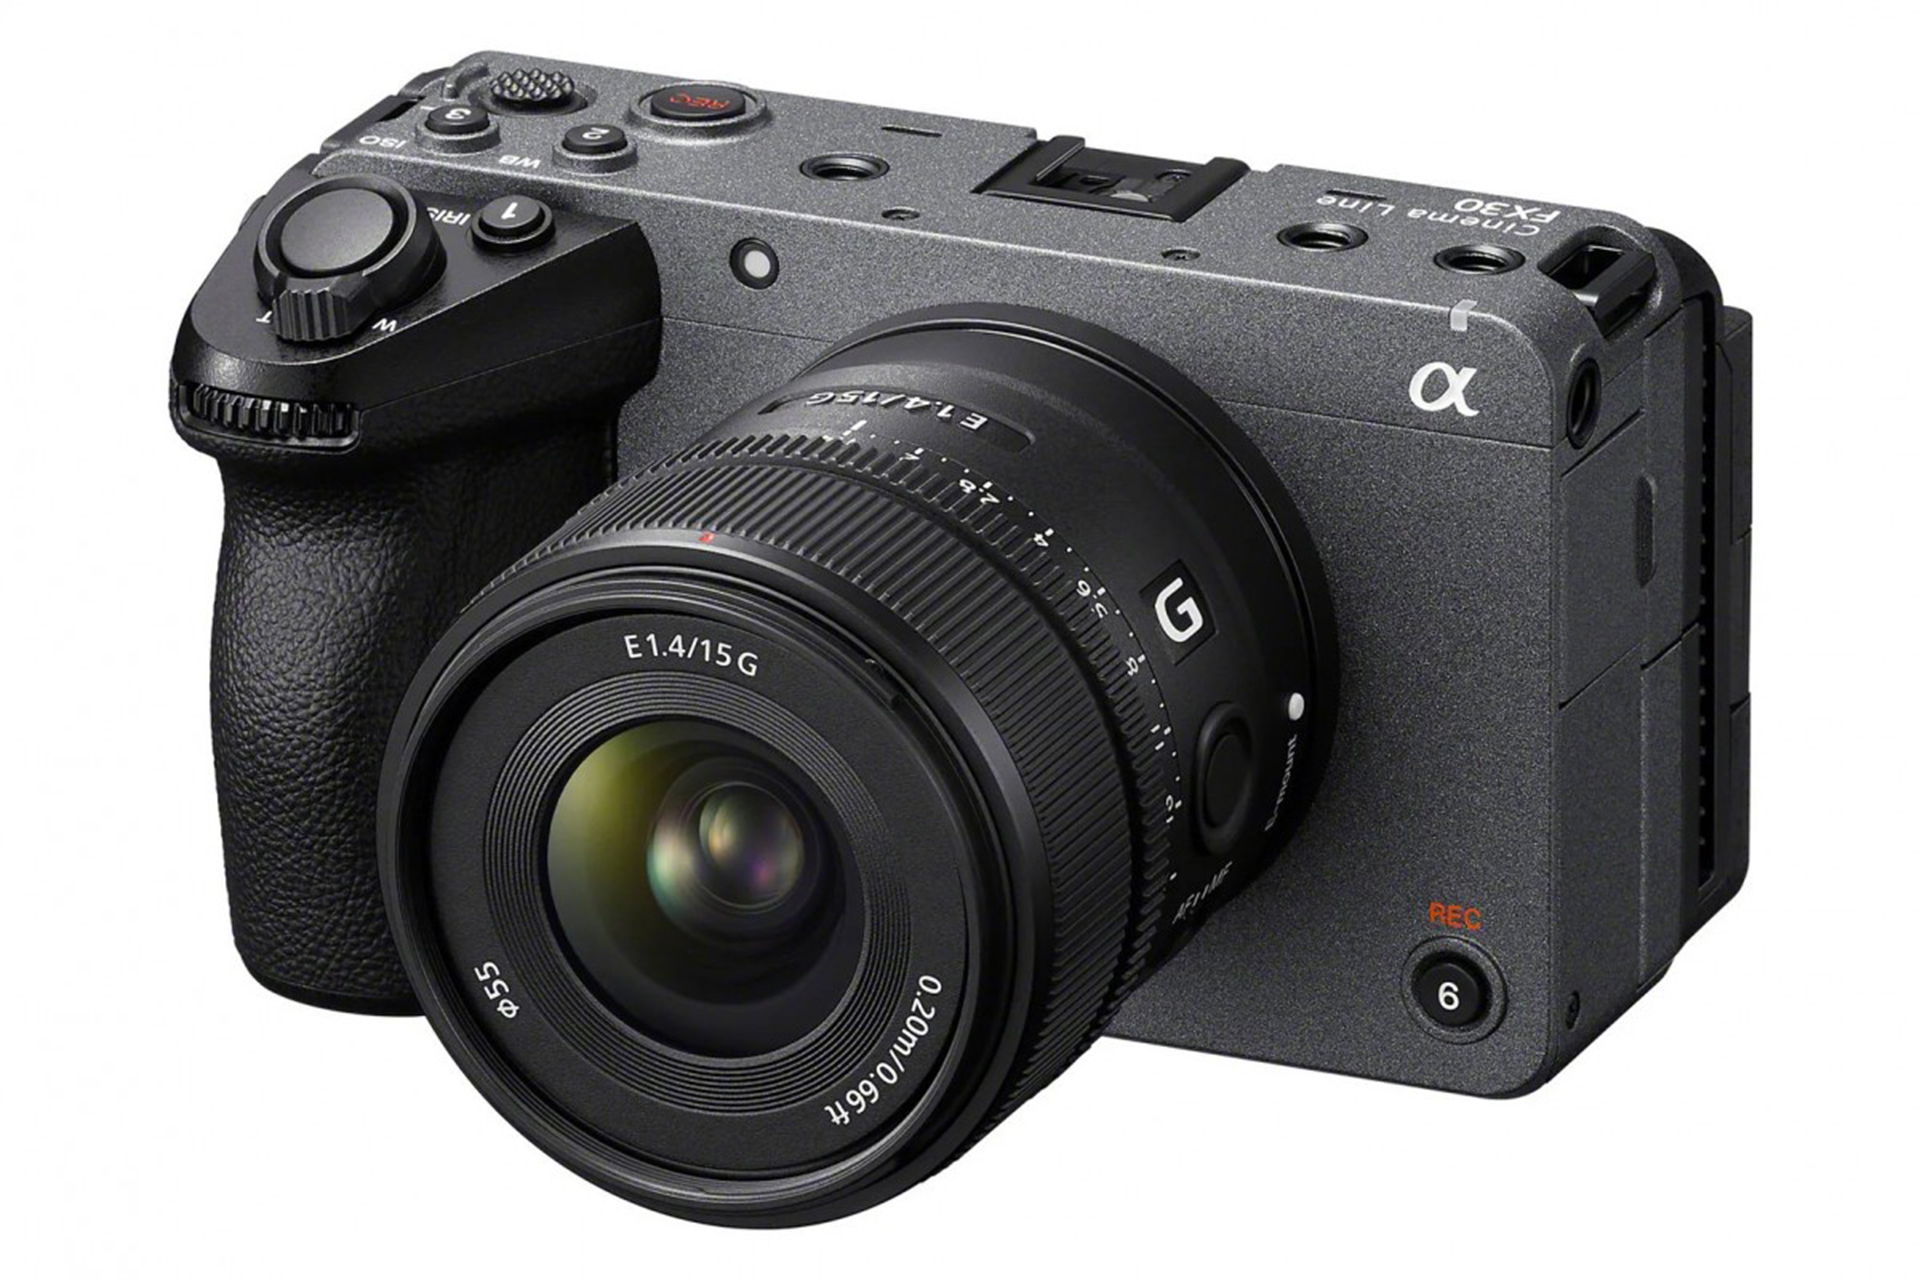 سونی دوربین FX30 Cinema Line را با قیمت پایه ۱۸۰۰ دلار معرفی کرد